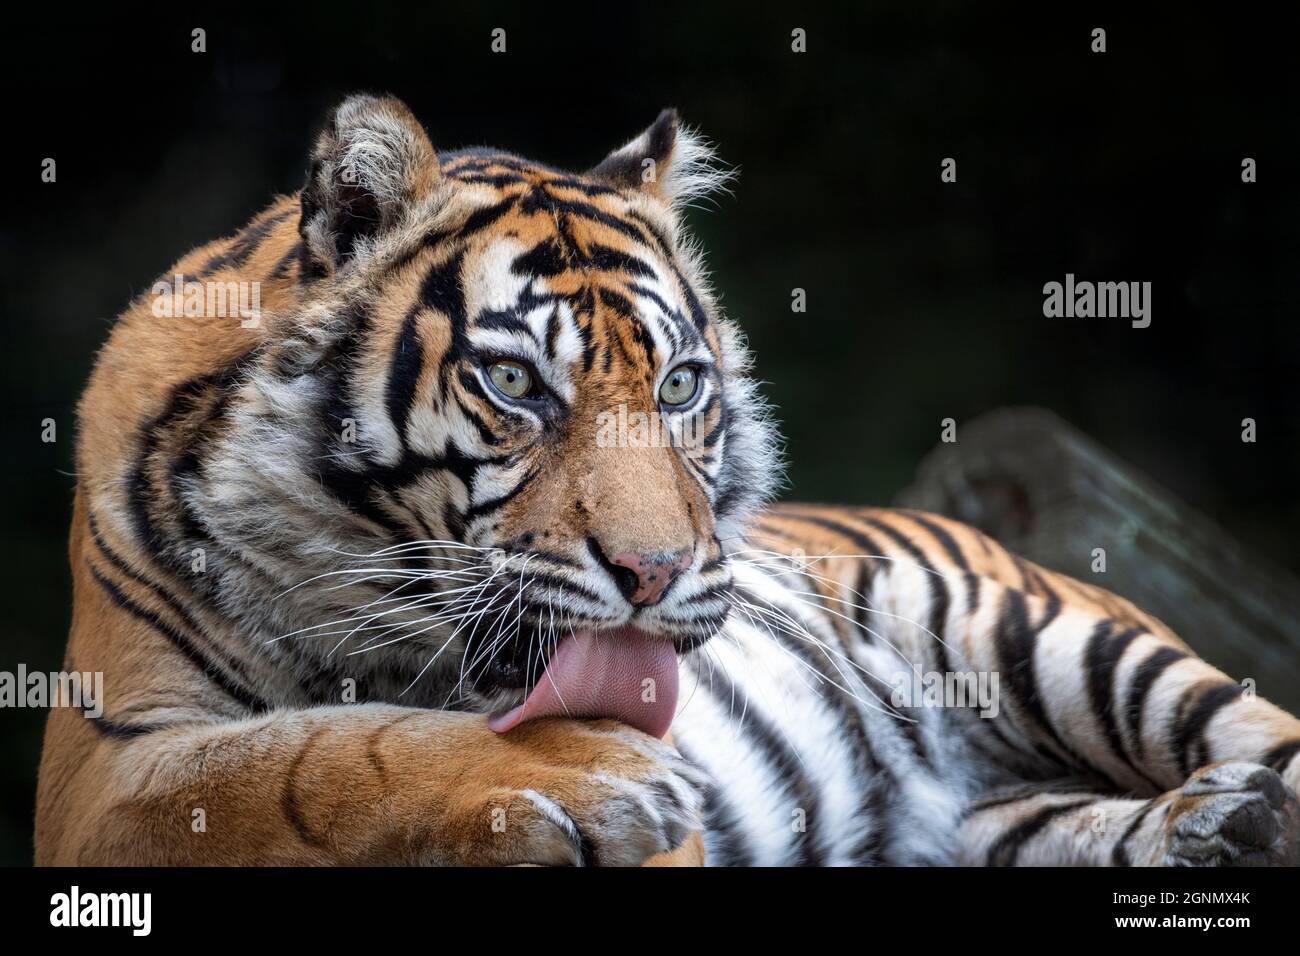 Female Sumatran tiger washing herself Stock Photo